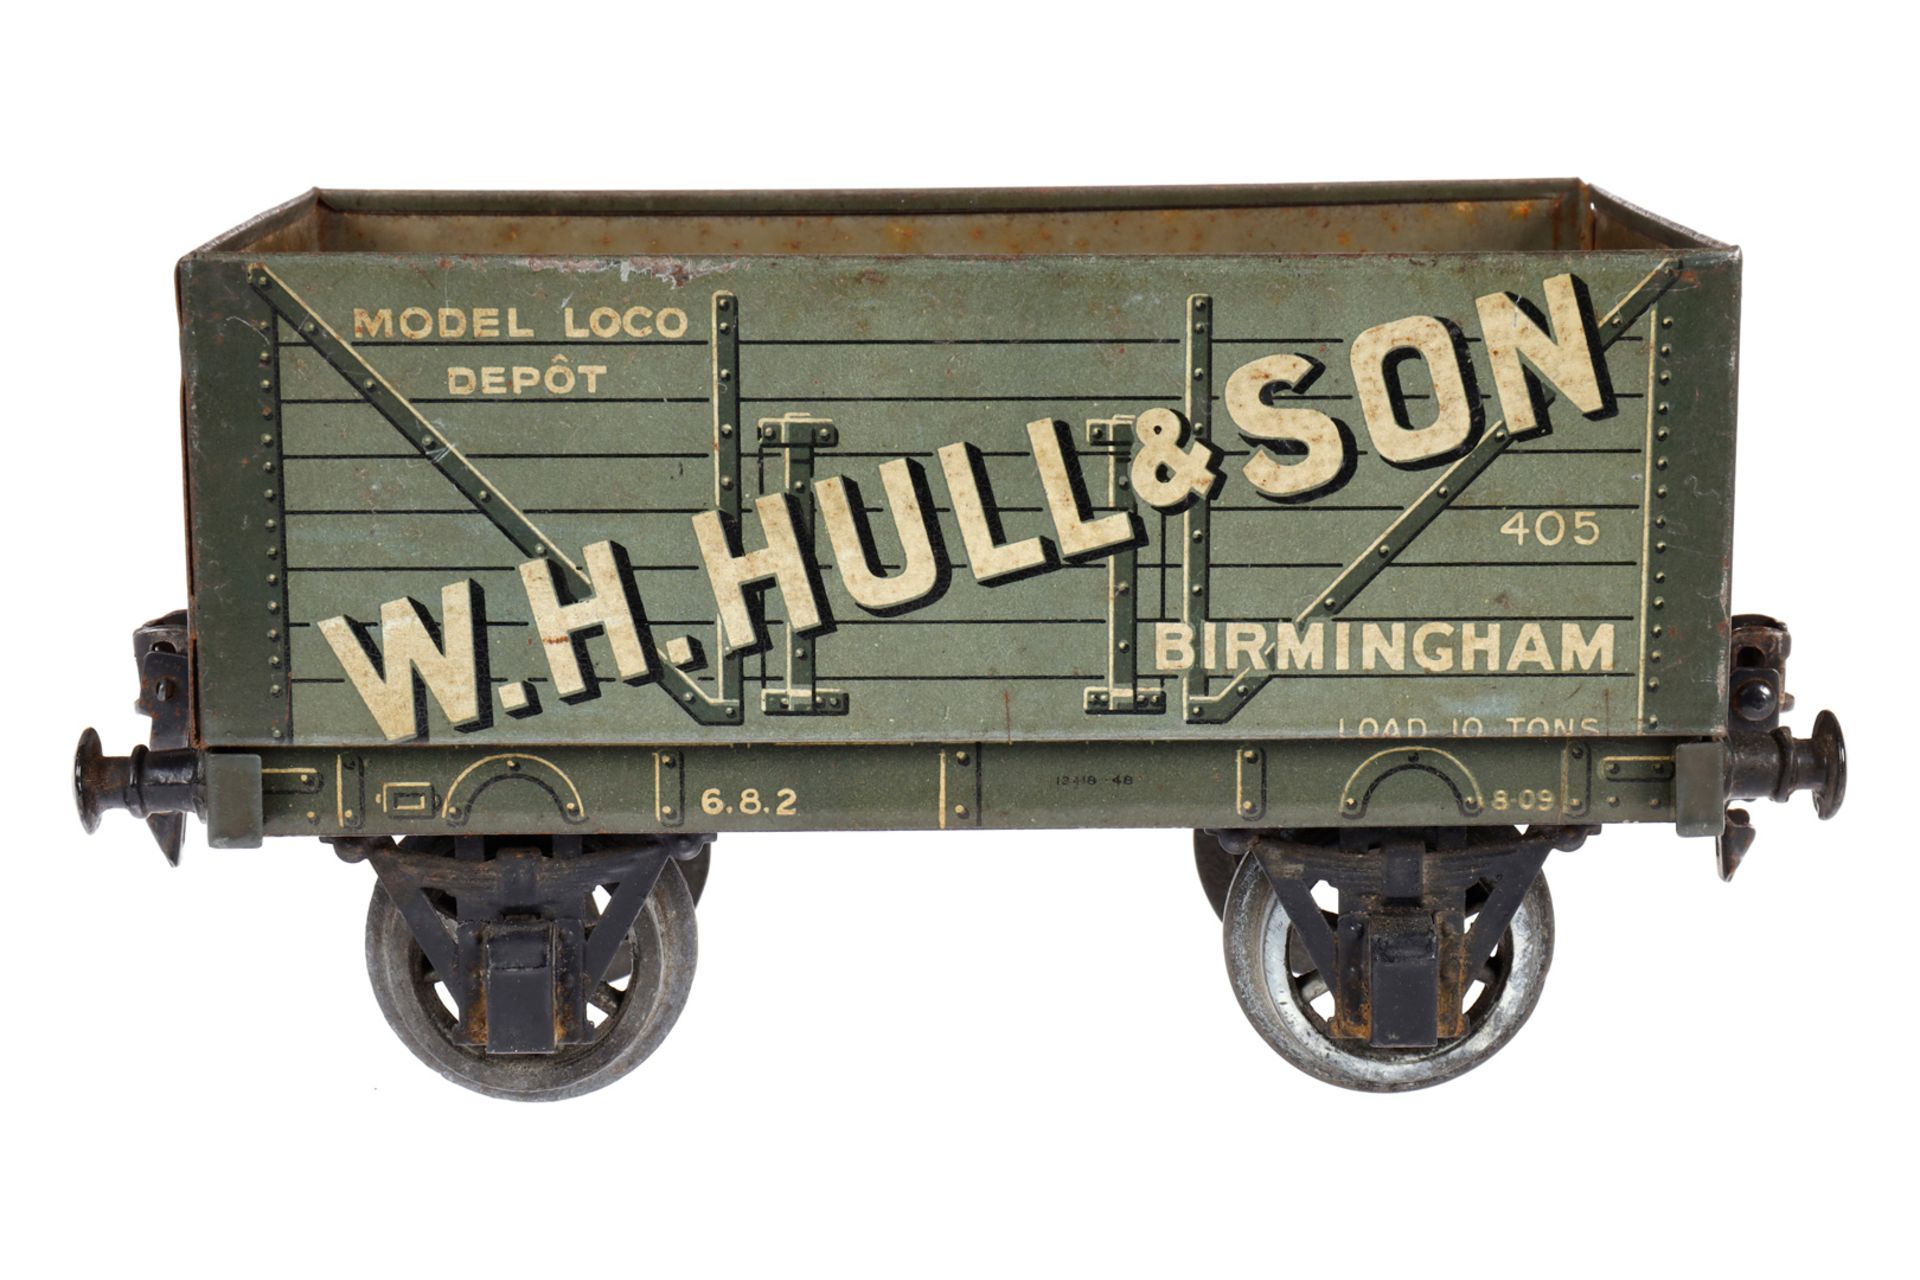 Carette/Basset-Lowke offener Güterwagen ”W.H. Hull & Son”, Spur 1, CL, mit Fixkupplungen, LS und